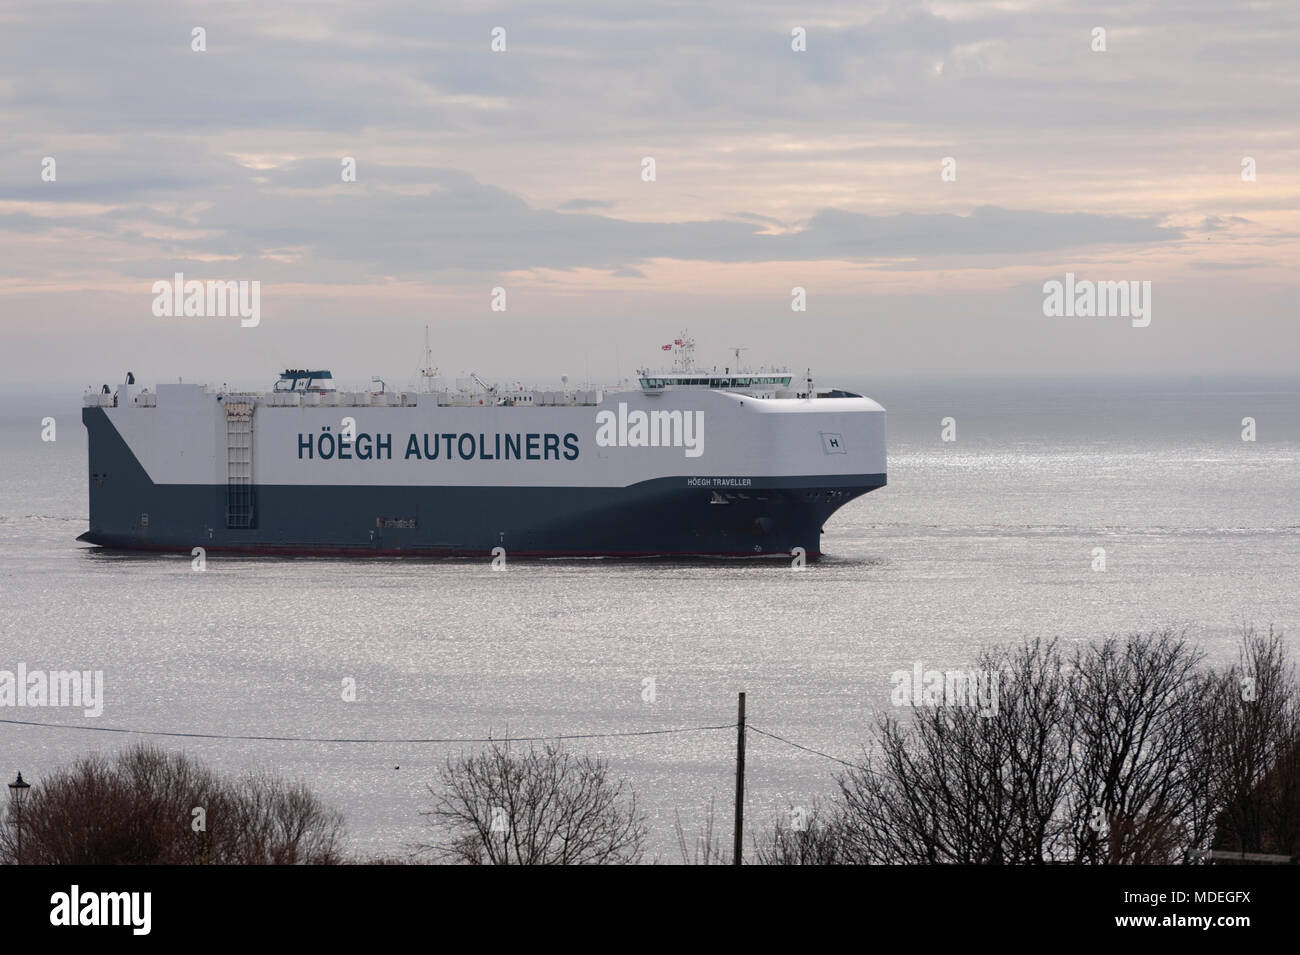 La Hoegh viaggiatore il autoliner che arrivano nel fiume Tyne su la mattina presto la bassa marea, sulla costa nord est. Foto Stock